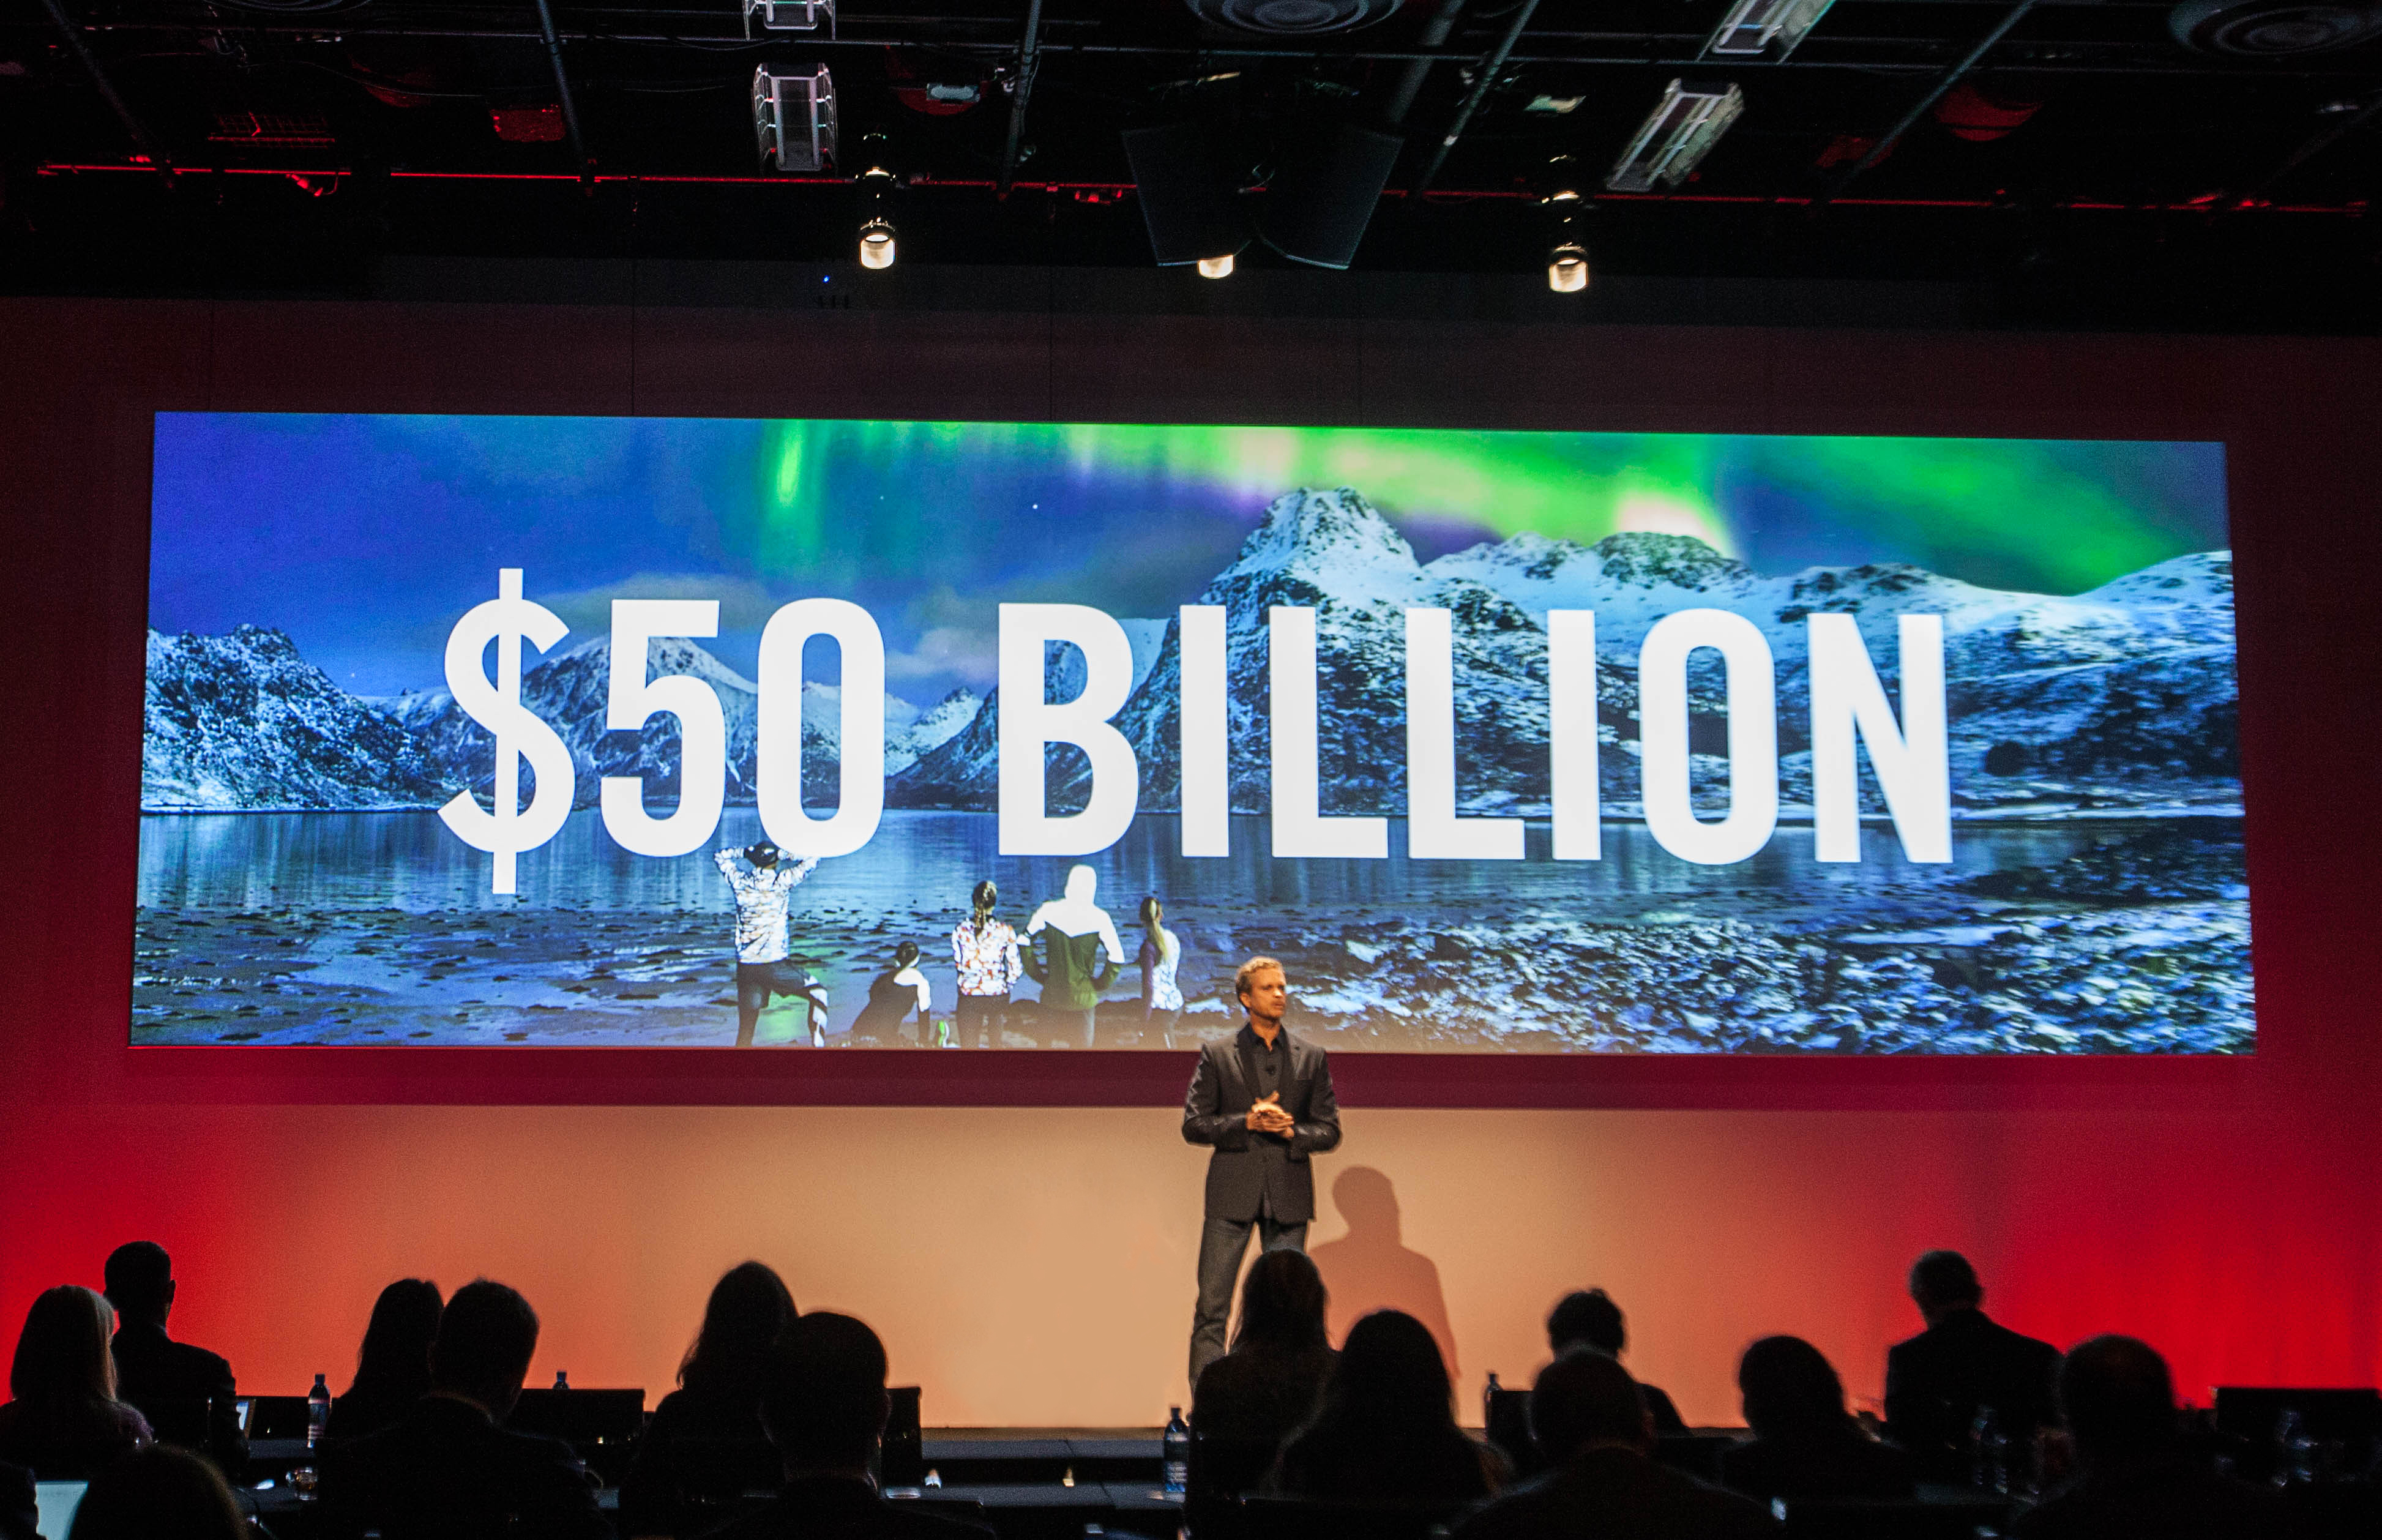 耐克集团宣布2020财年收入目标为500亿美元